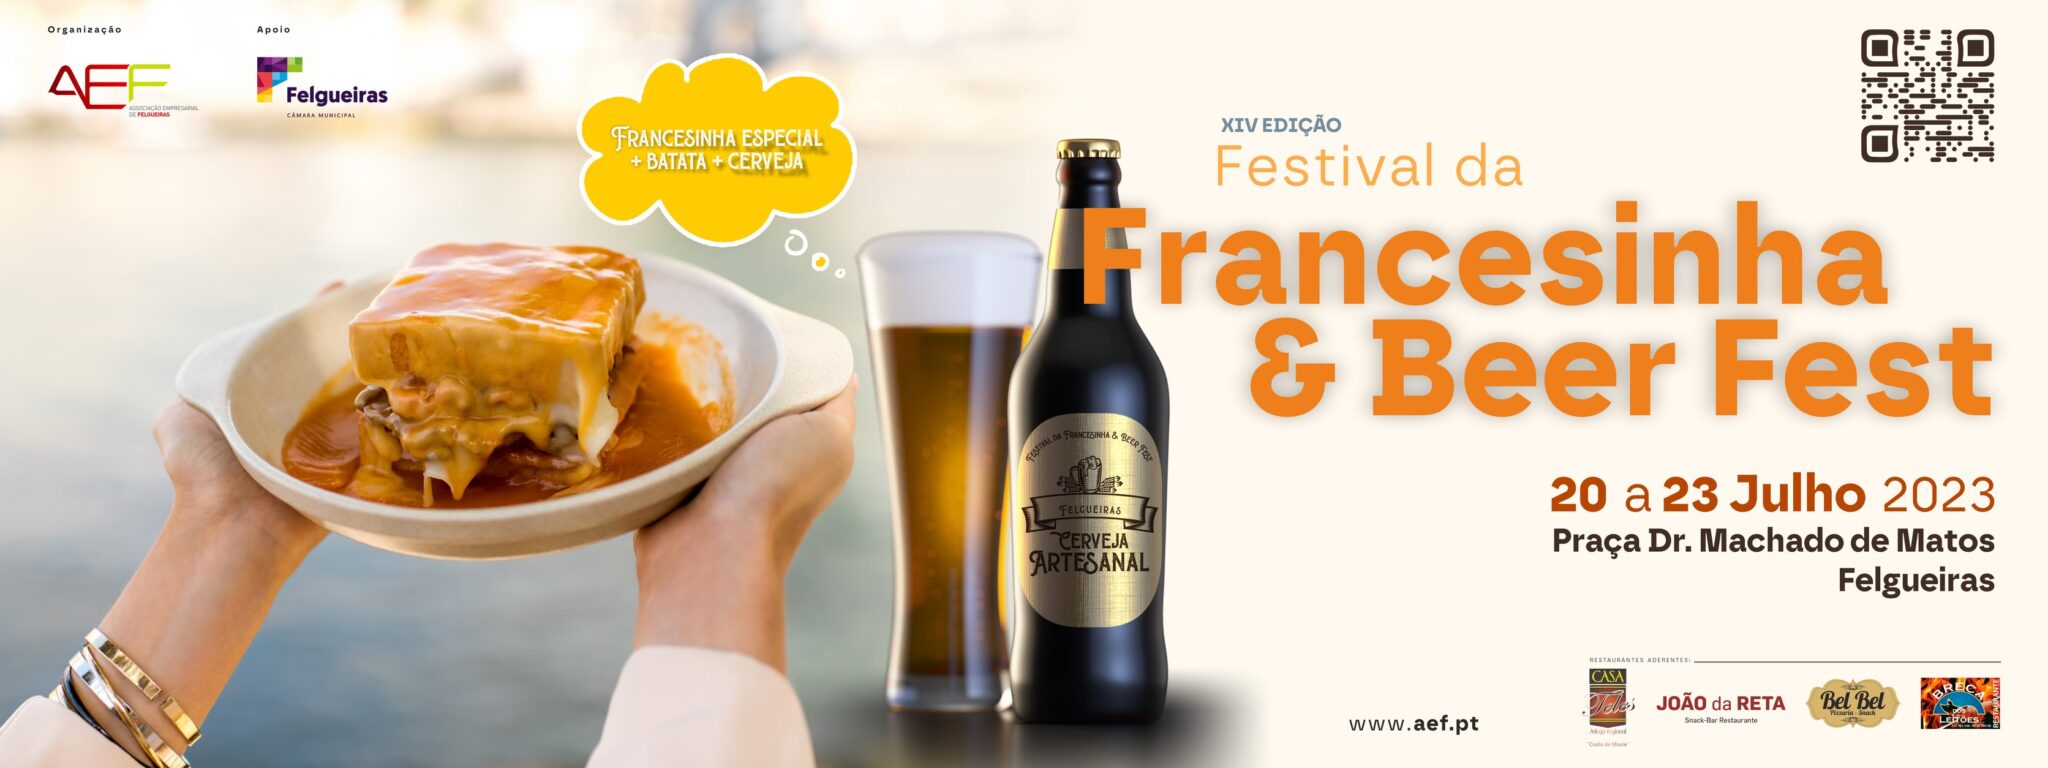 Festival das Francesinhas & Beer Fest 2023